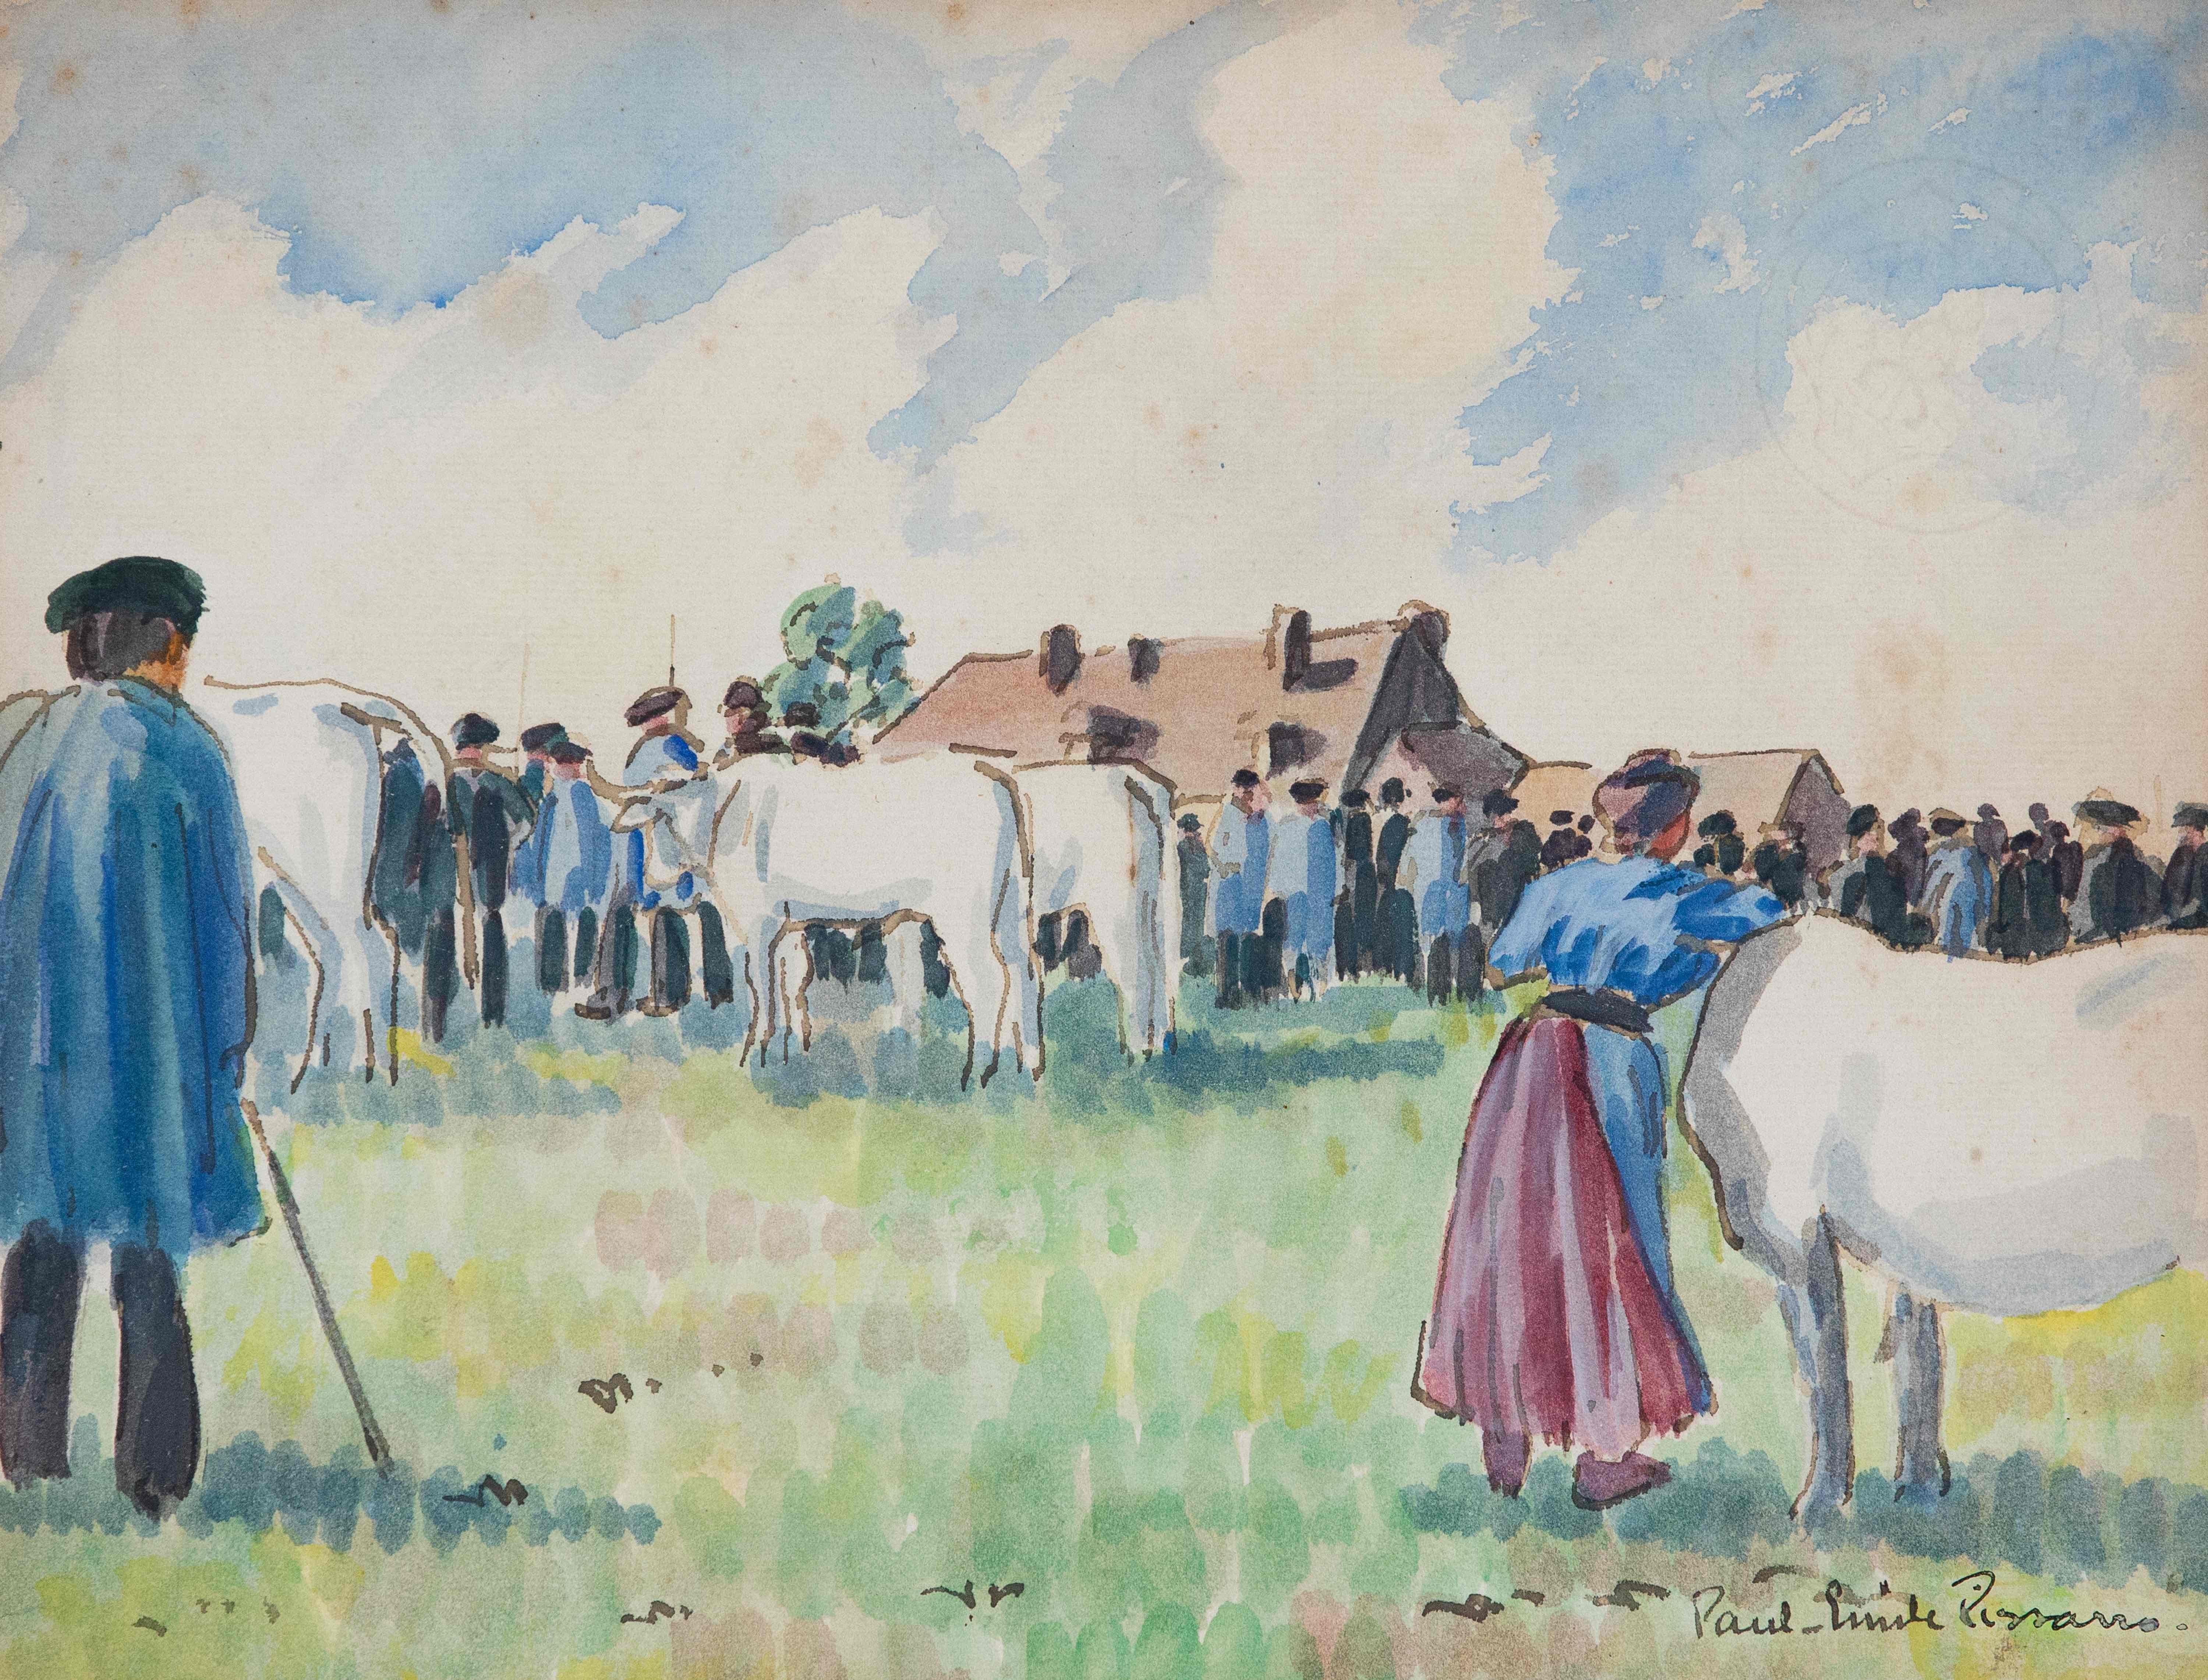 Le marché aux bestiaux by Paulémile Pissarro - Watercolour and ink on paper